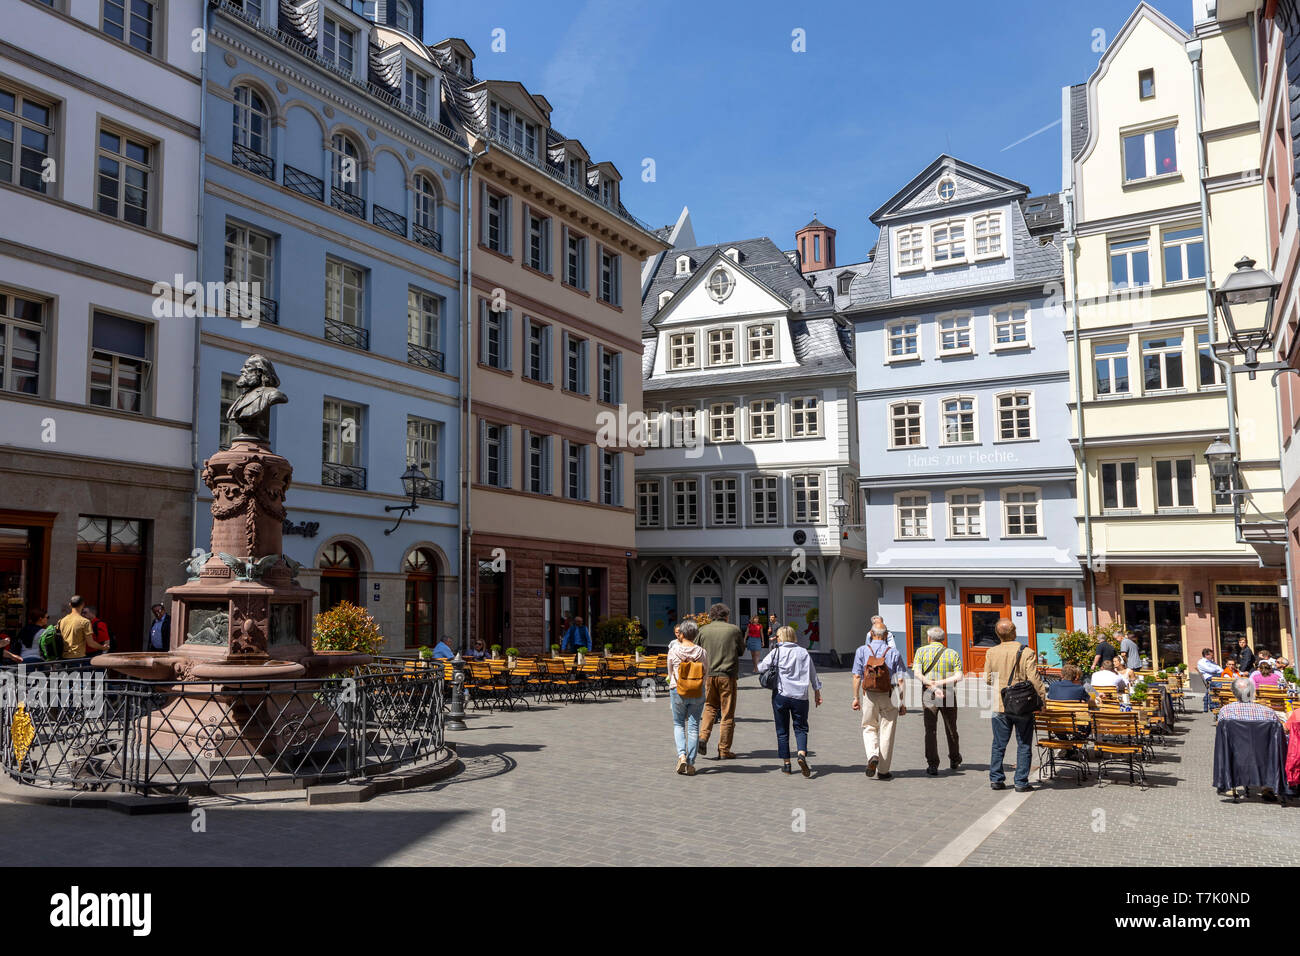 Frankfurt am Main, Die neue Altstadt, rekonstruierte Häuser im Altstadtviertel zwischen Römer und Dom, Hühnermarkt, Friedrich-Stoltze-Brunnen Foto Stock